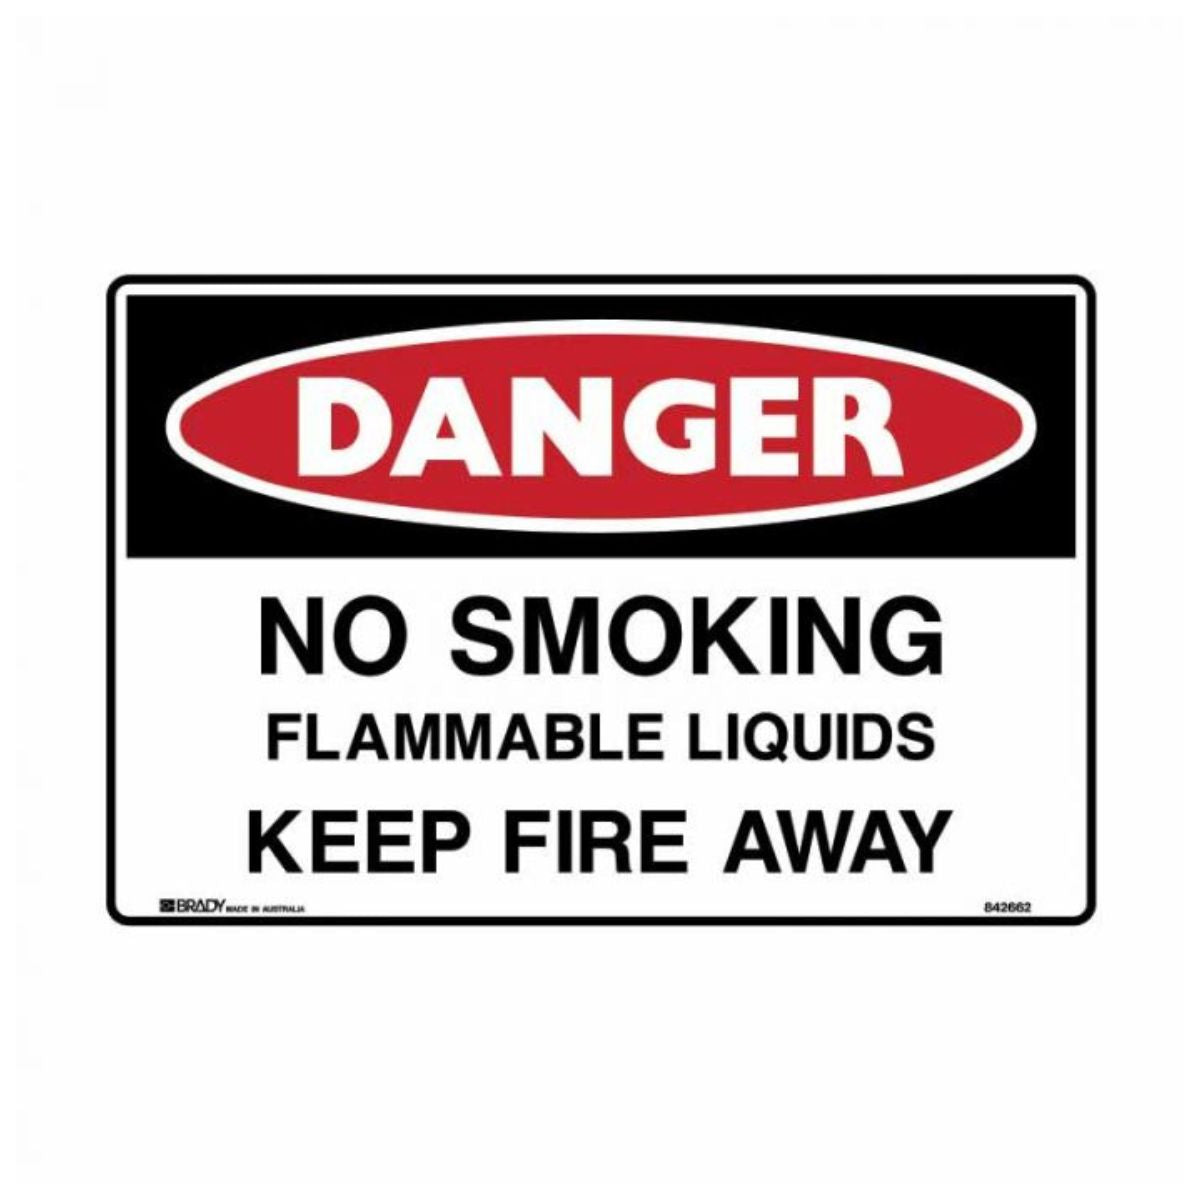 Brady Danger Sign - No Smoking Flammable Liquids Keep Fire Away 842667